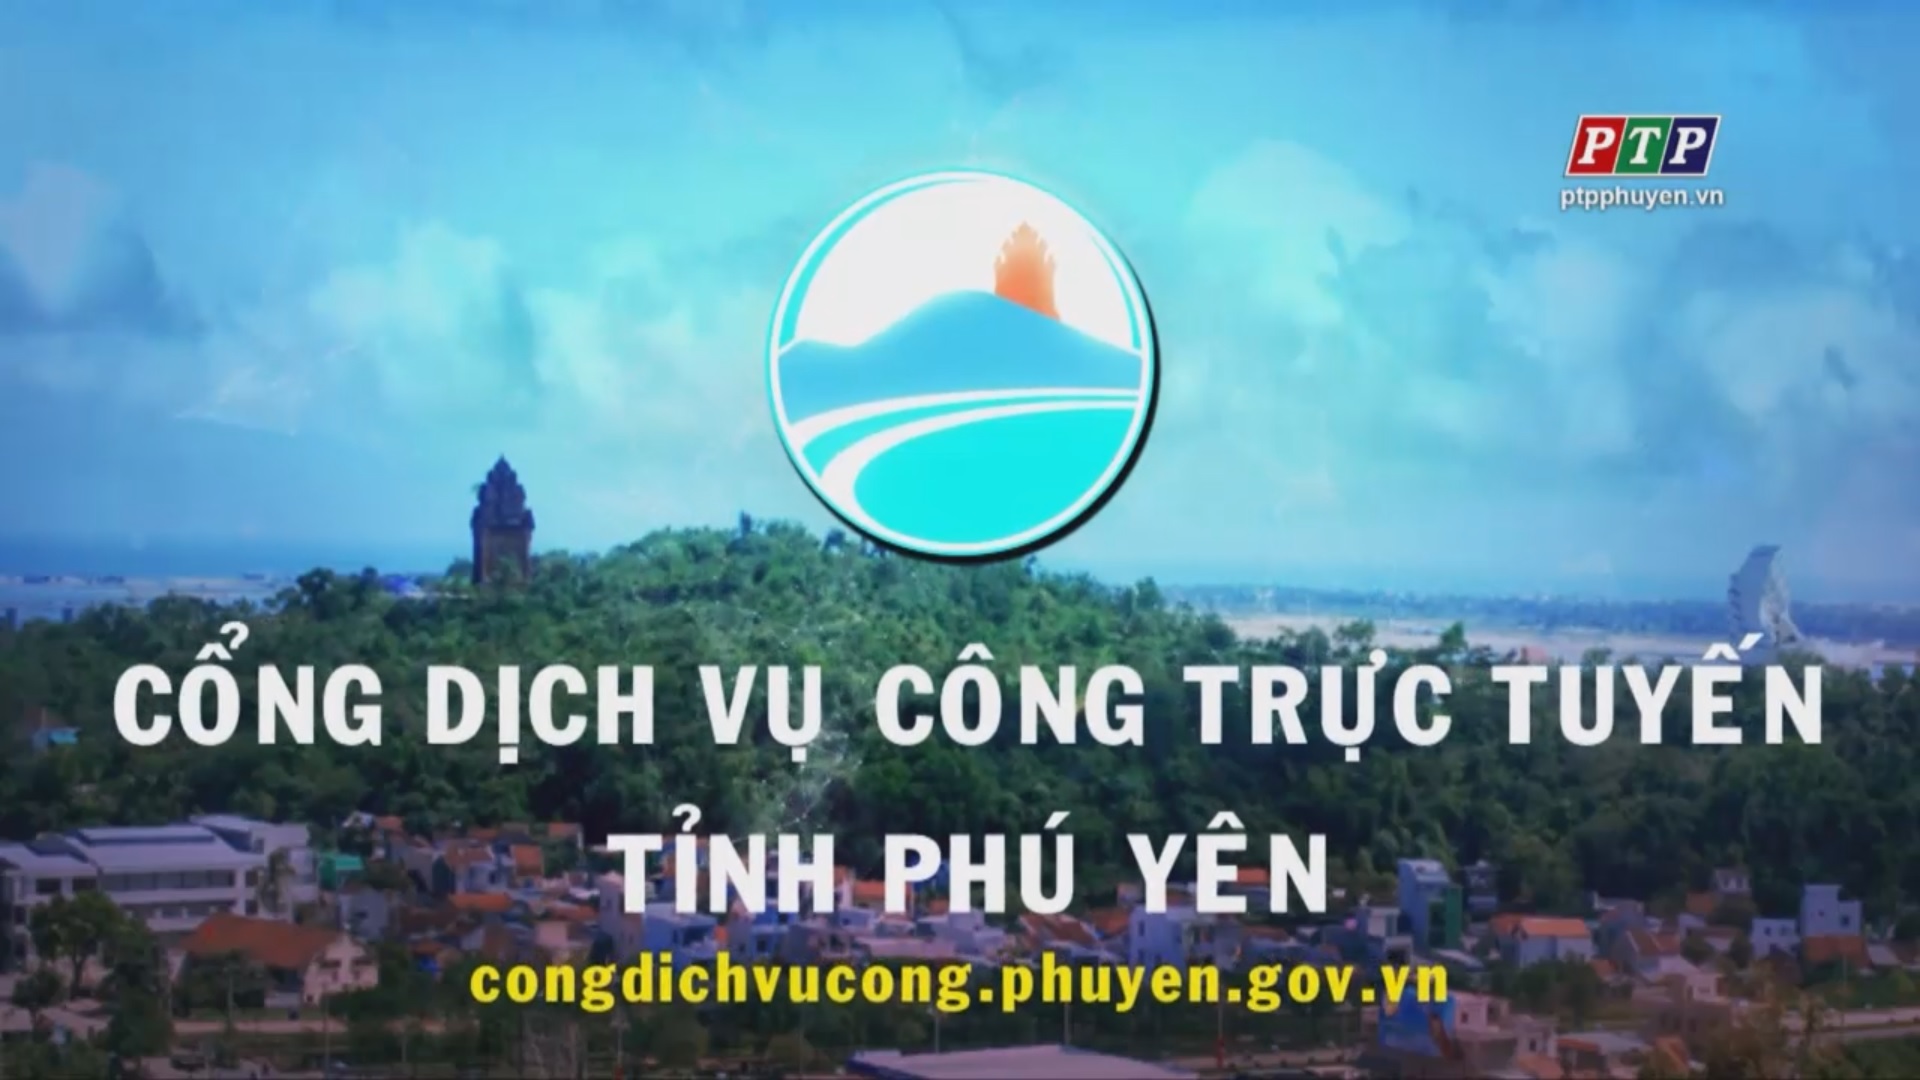 Phóng sự: Nộp hồ sơ trực tuyến trên cổng dịch vụ công trực tuyến tỉnh Phú Yên